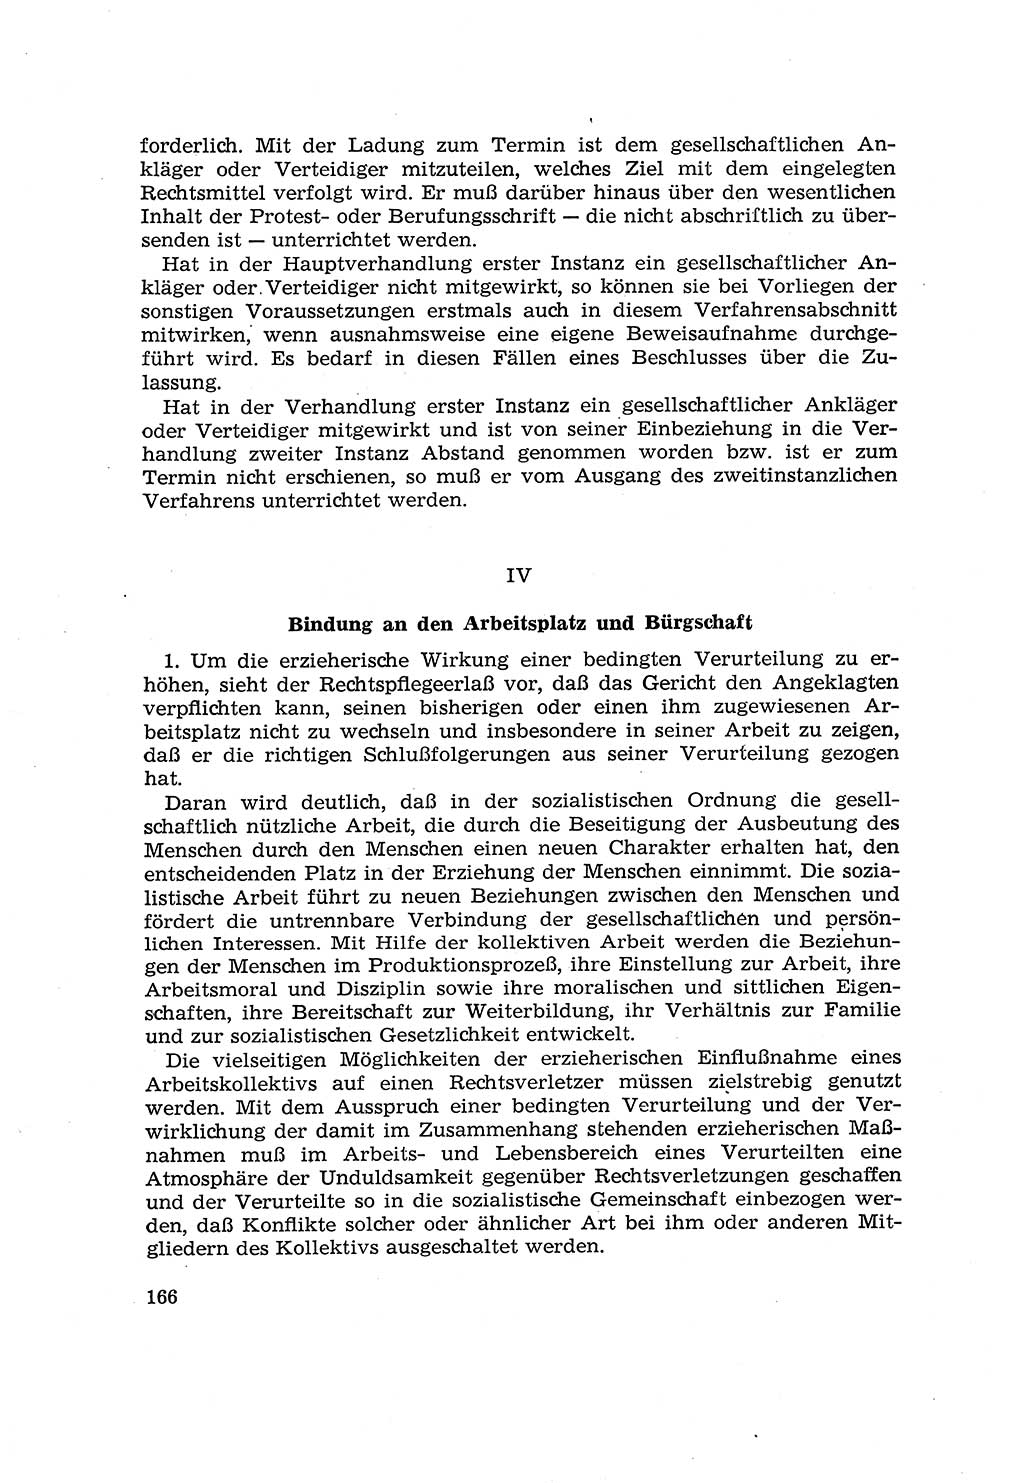 Die Mitwirkung der Werktätigen am Strafverfahren [Deutsche Demokratische Republik (DDR)] 1966, Seite 166 (Mitw. Str.-Verf. DDR 1966, S. 166)